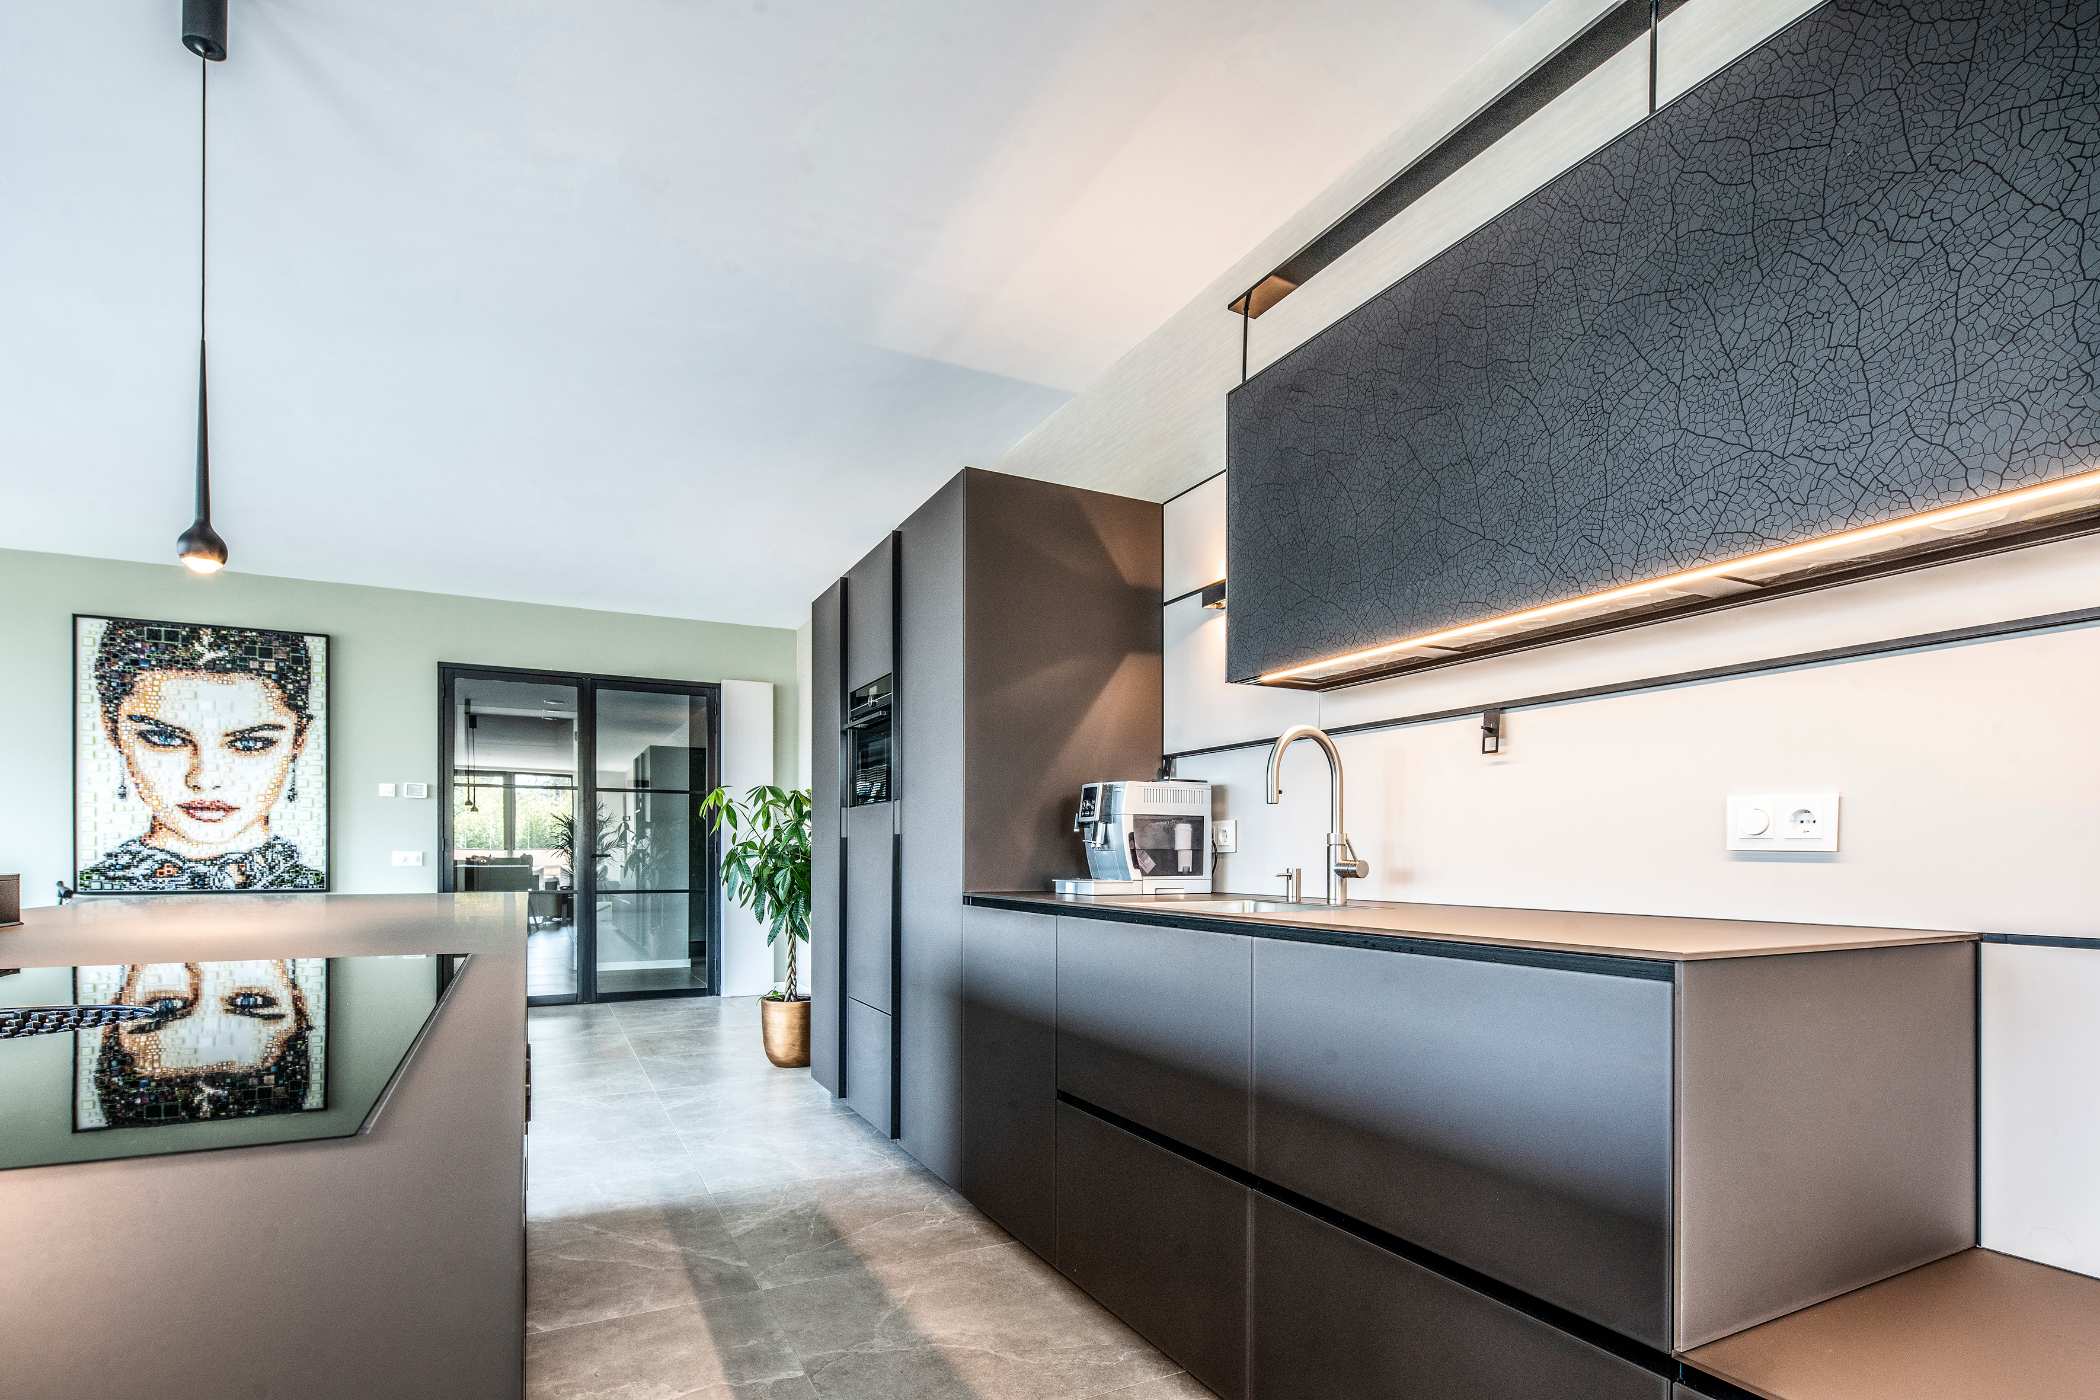 Nieuwbouwappartement Breda met glazen vacucine keuken